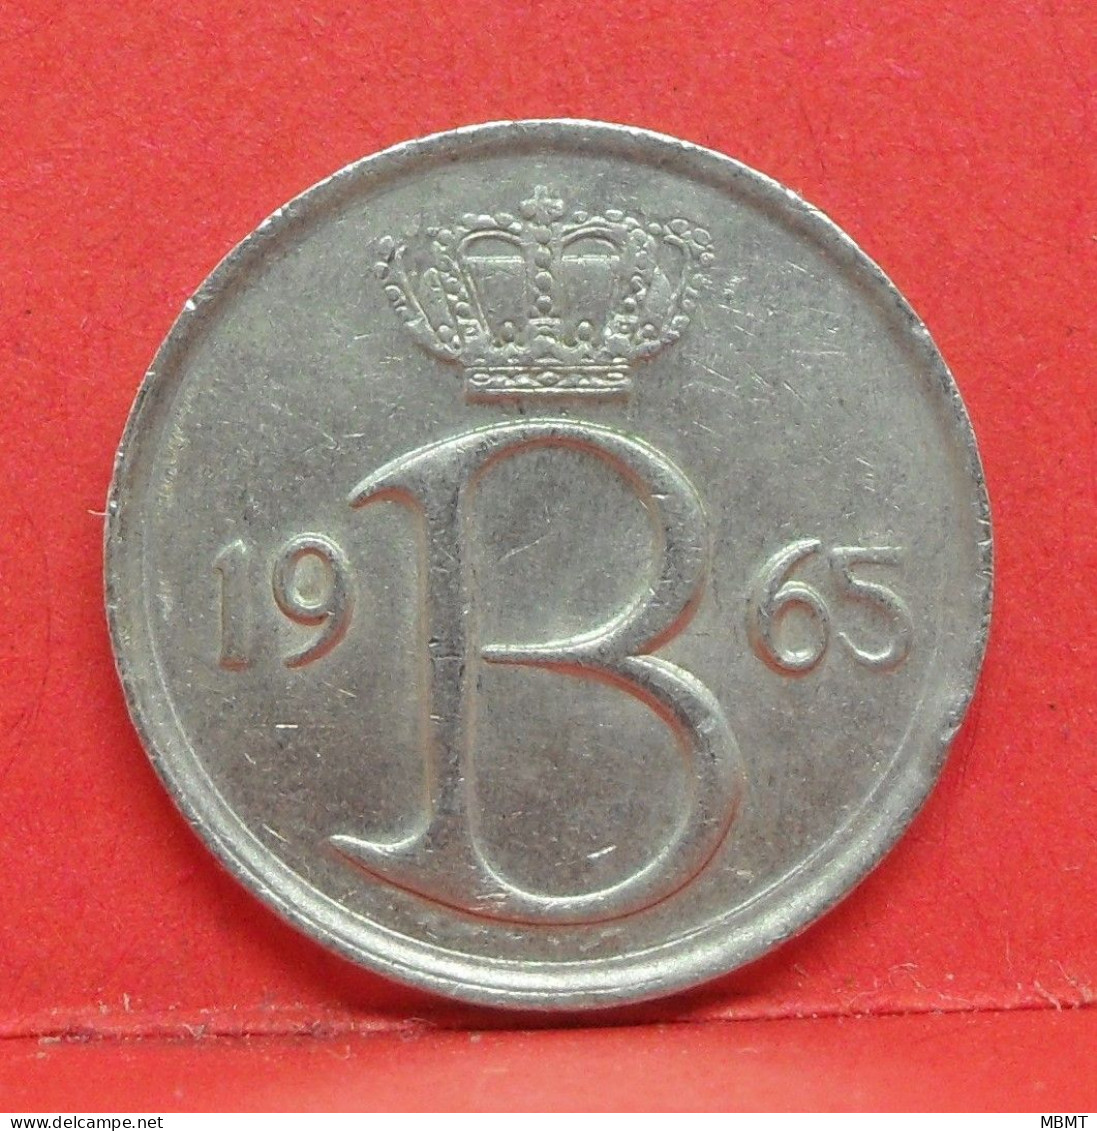 25 Centimes 1965 - TTB - Pièce Monnaie Belgique - Article N°1682 - 25 Cent